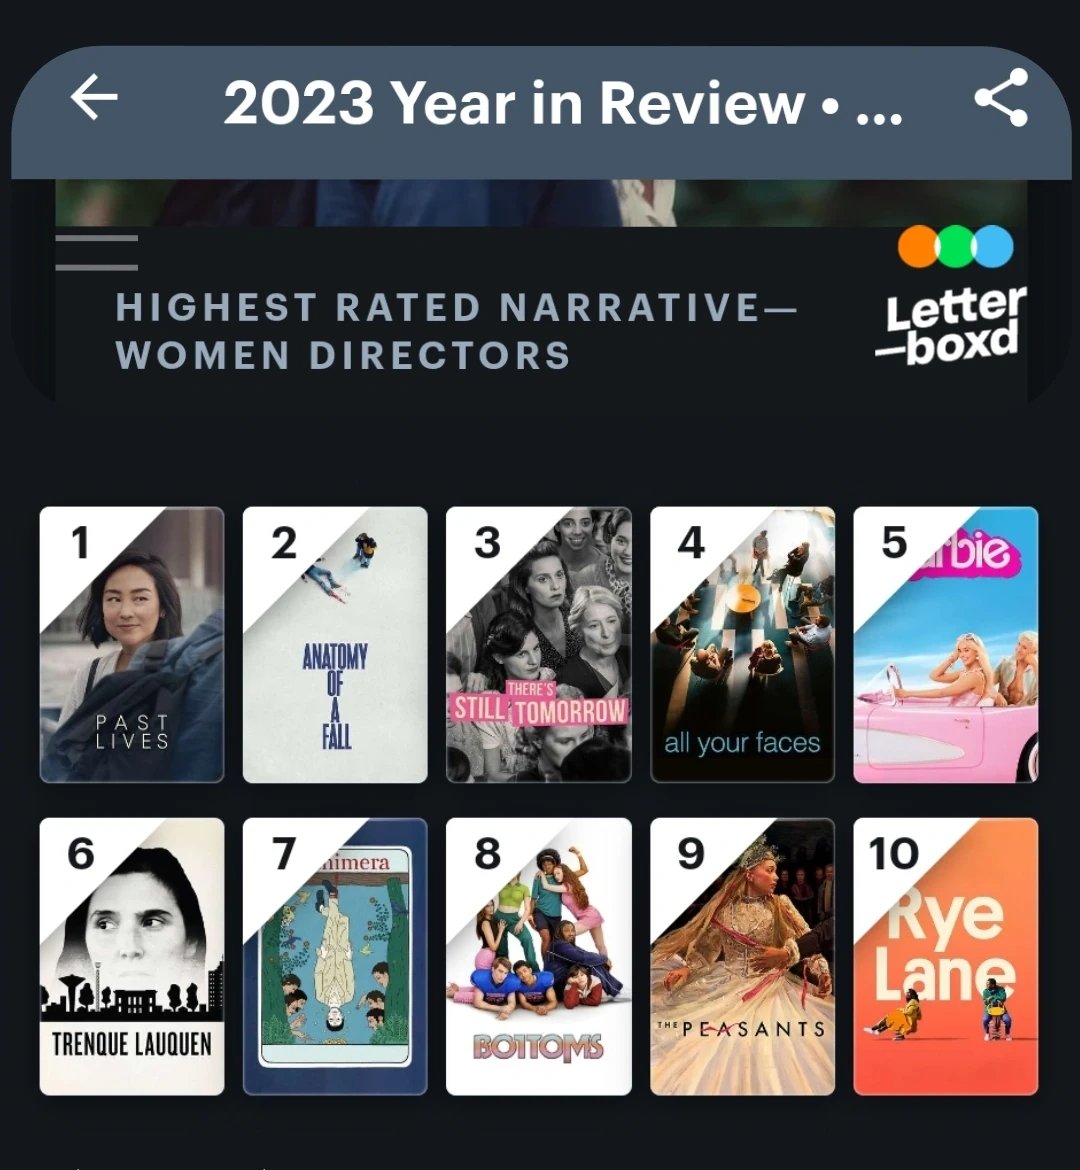 O filme argentino 'Trenque Lauquen' também está no TOP10 mundial de filmes dirigidos por mulheres!

#DirectedByWomen #52FilmsByWomen #Letterboxd